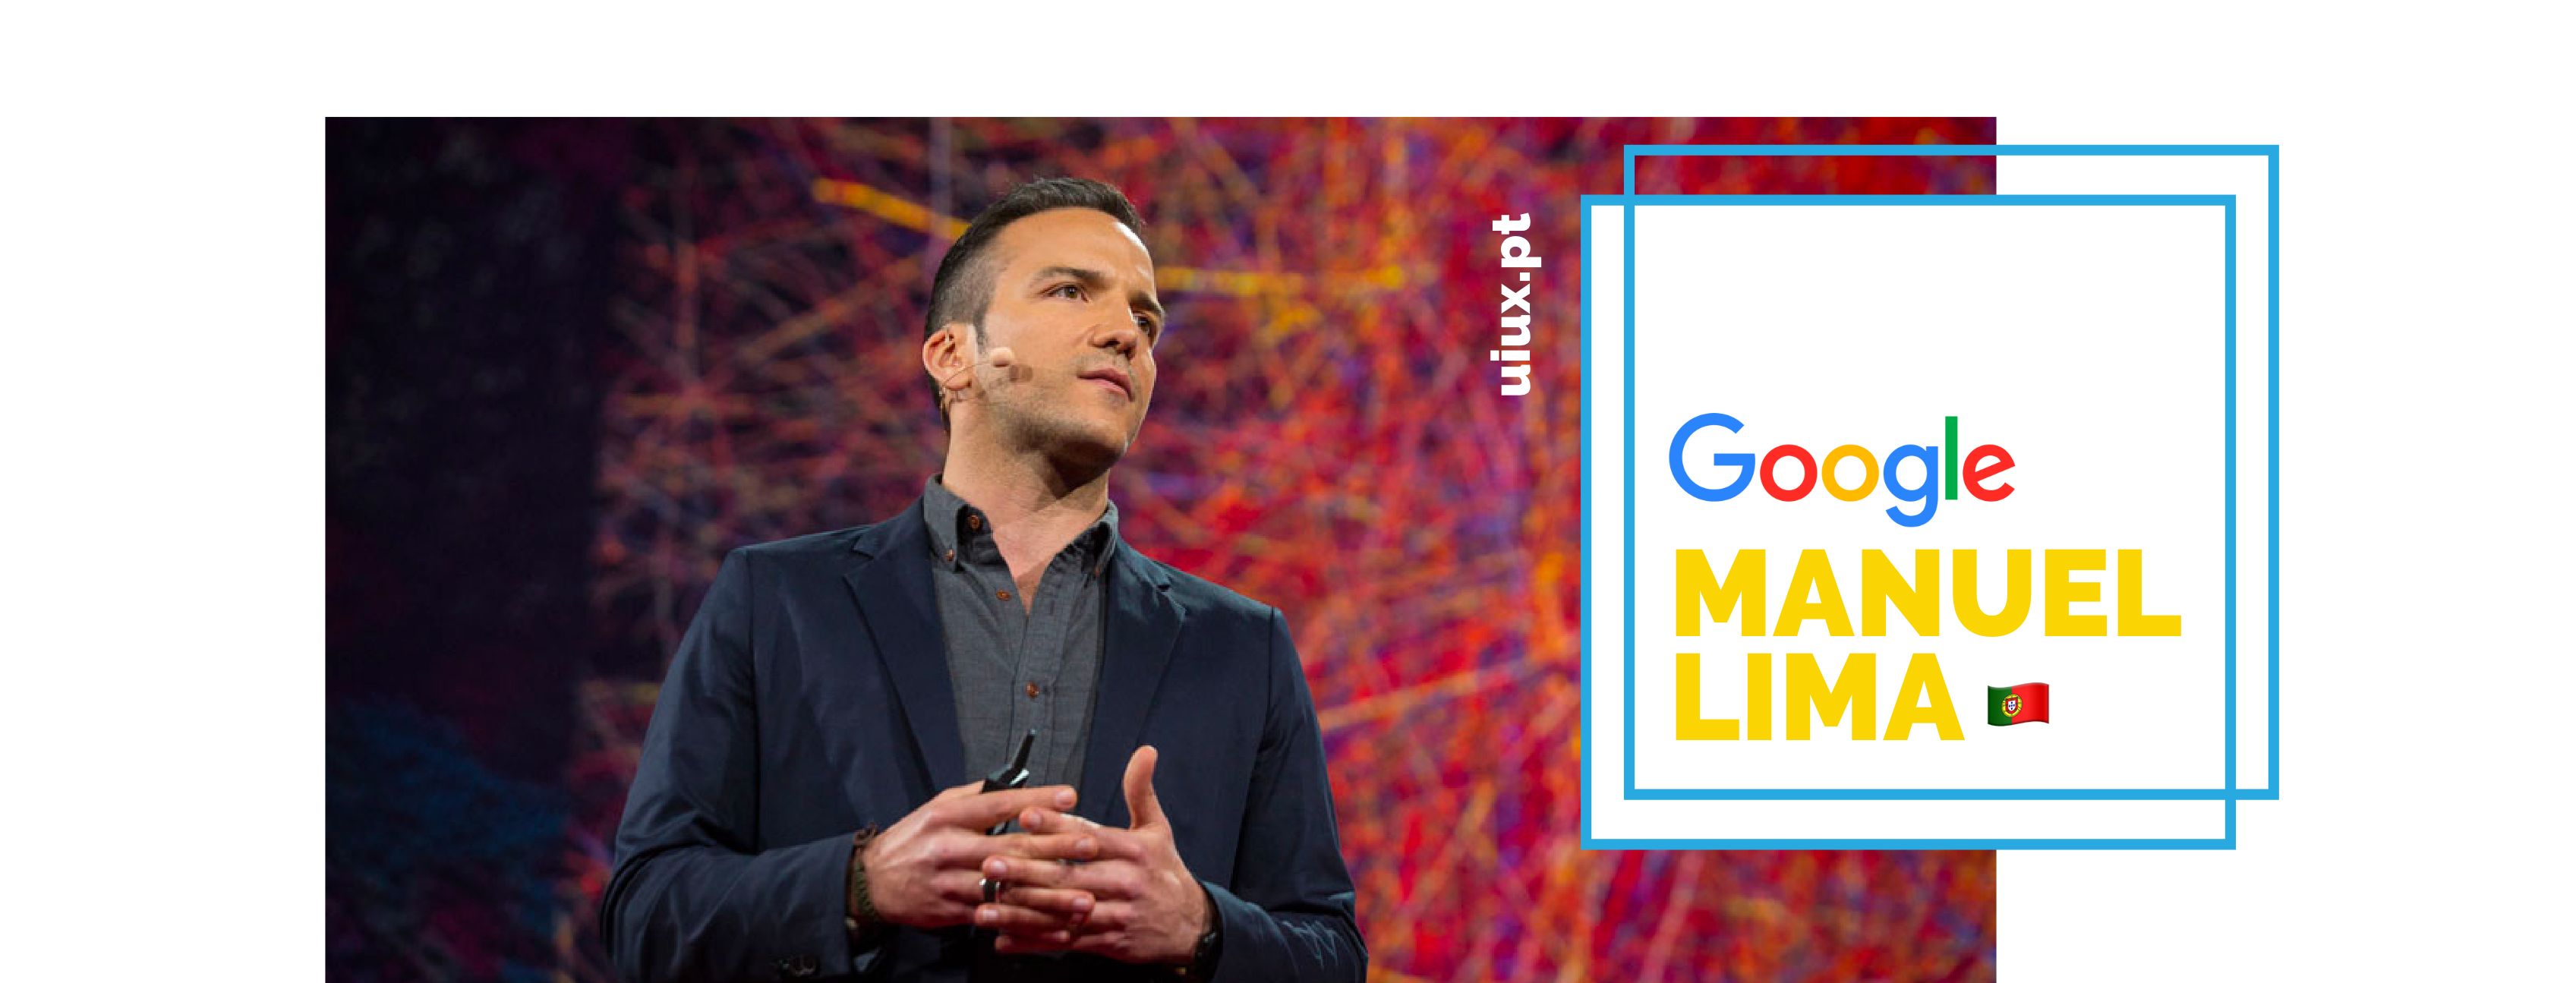 Manuel Lima, UX na Google, é português e uma das 50 mentes mais influentes e criativas do mundo.